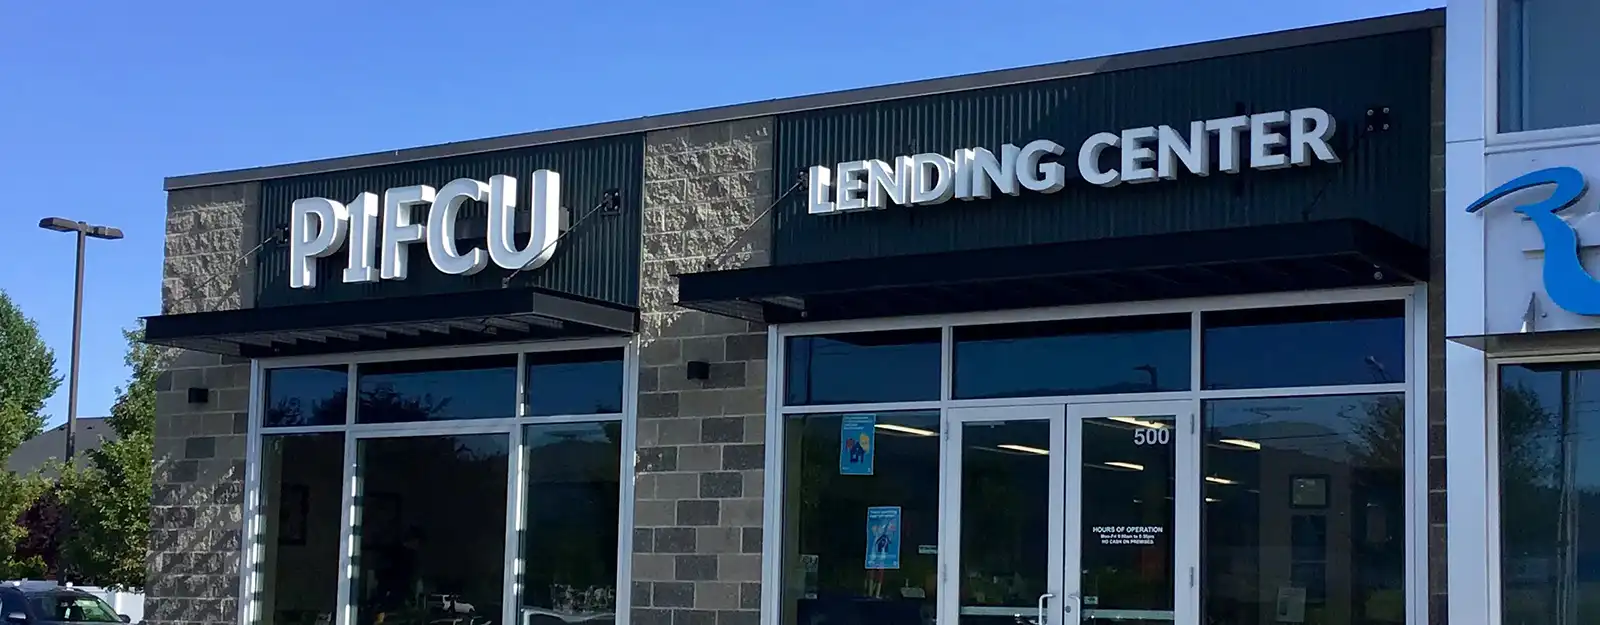 P1FCU Lending Center